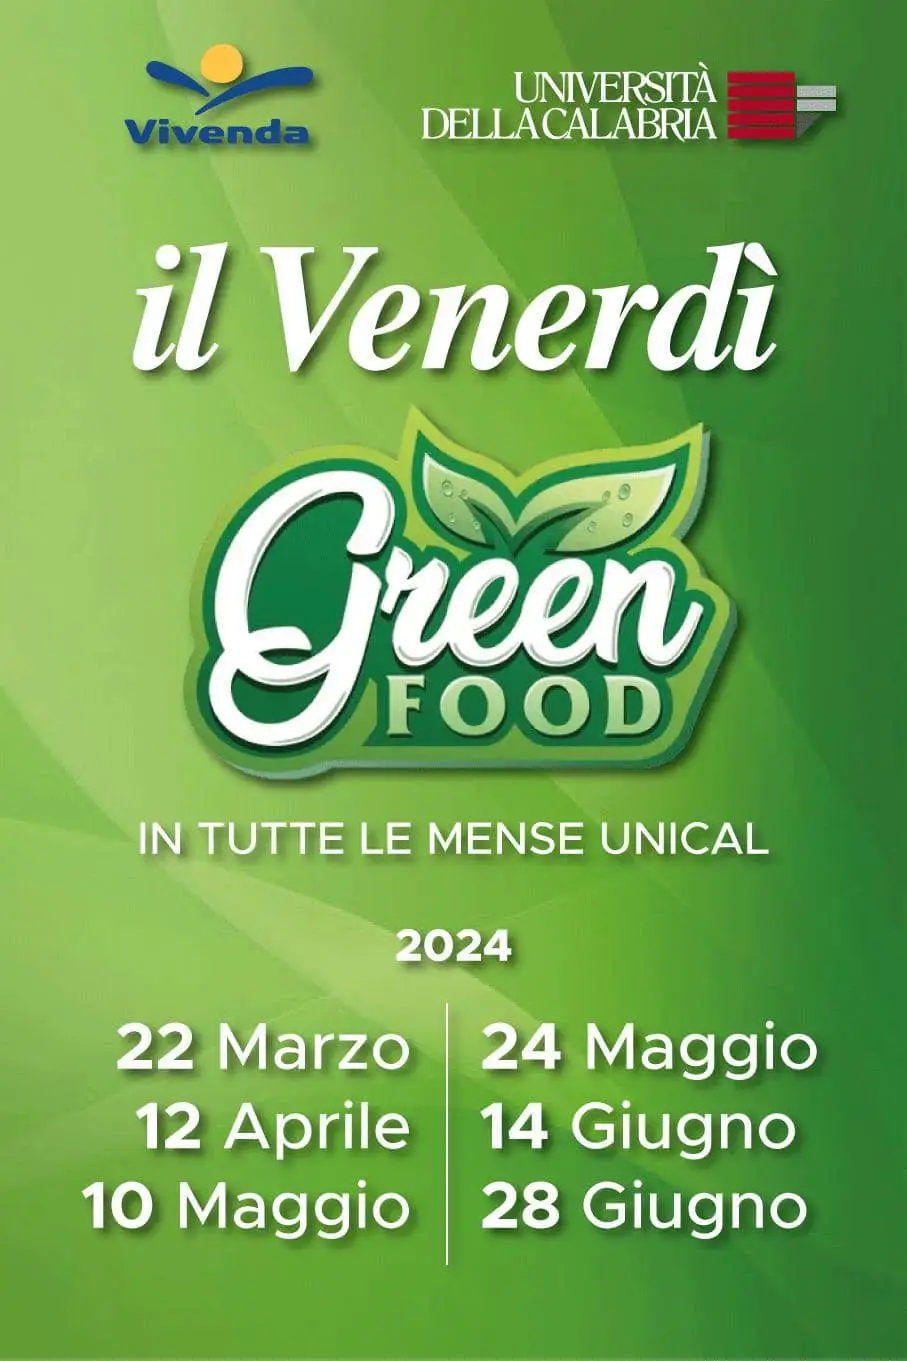 Venerdi green food